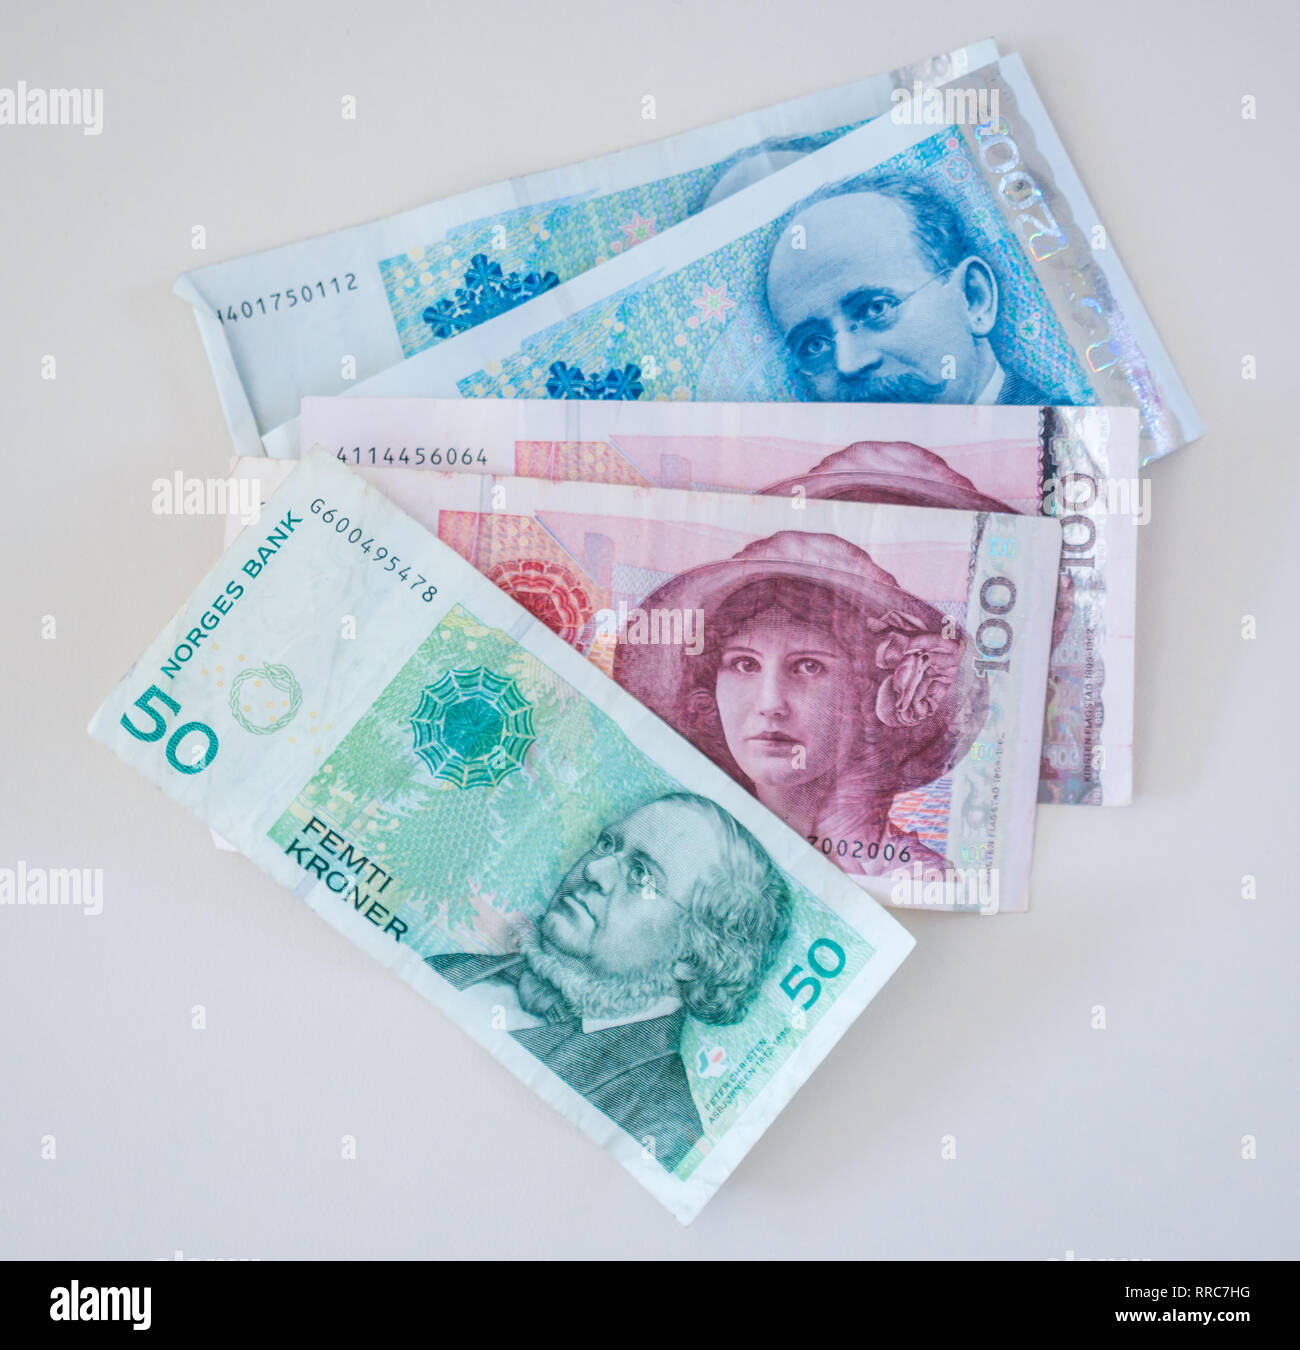 Ausländisches Geld Norwegen Banknoten; Norwegian Kroner, 50 Kronen, 100  Kronen und 200 Kronen Notizen Stockfotografie - Alamy